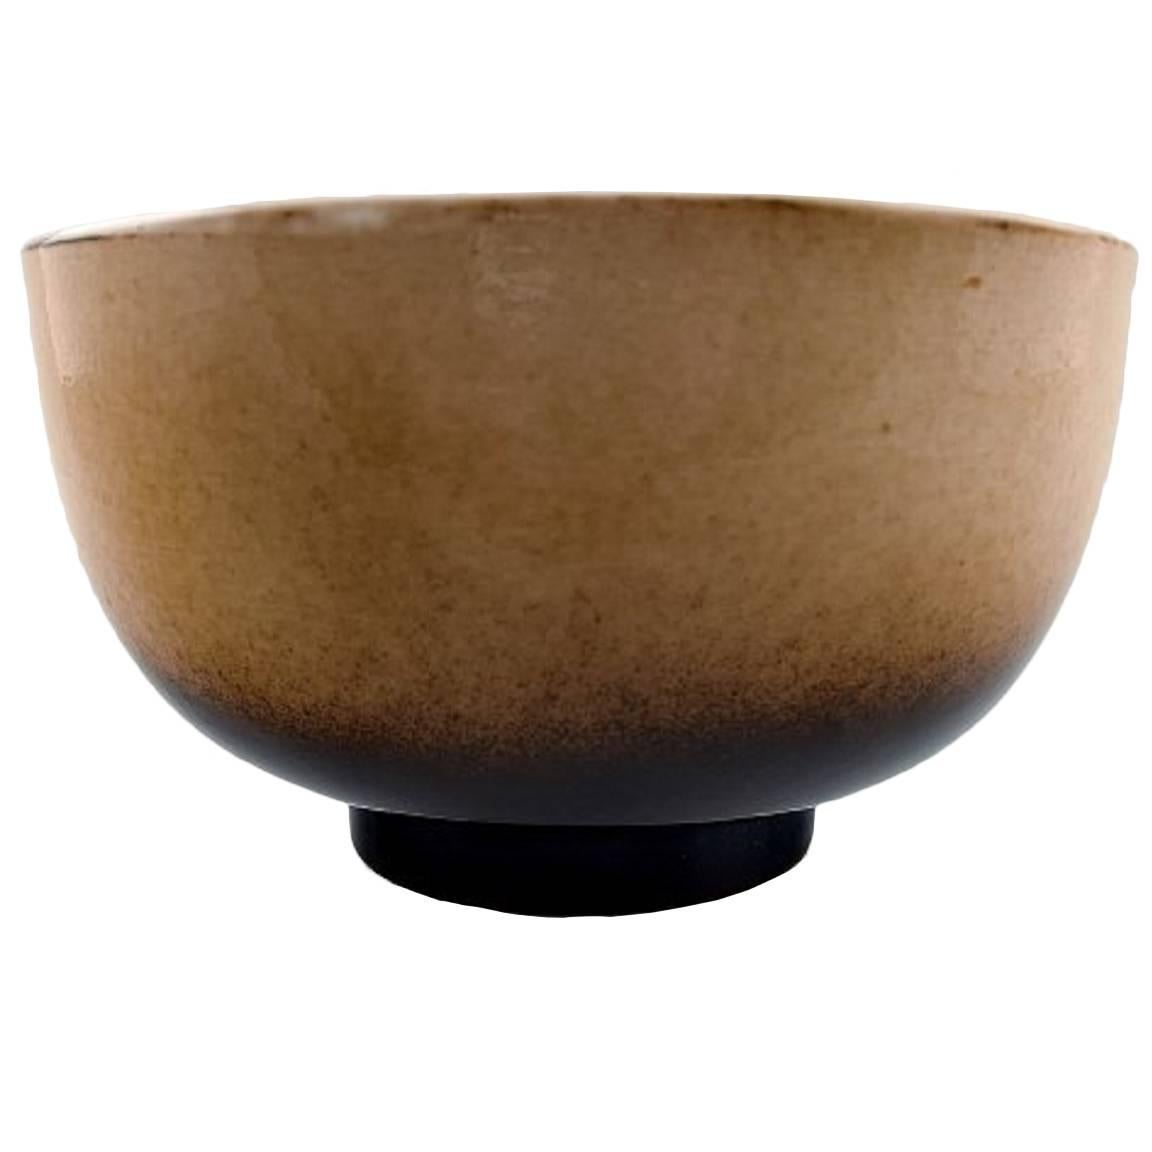 Unique Royal Copenhagen Large Ceramic Bowl by Nils Thorsson